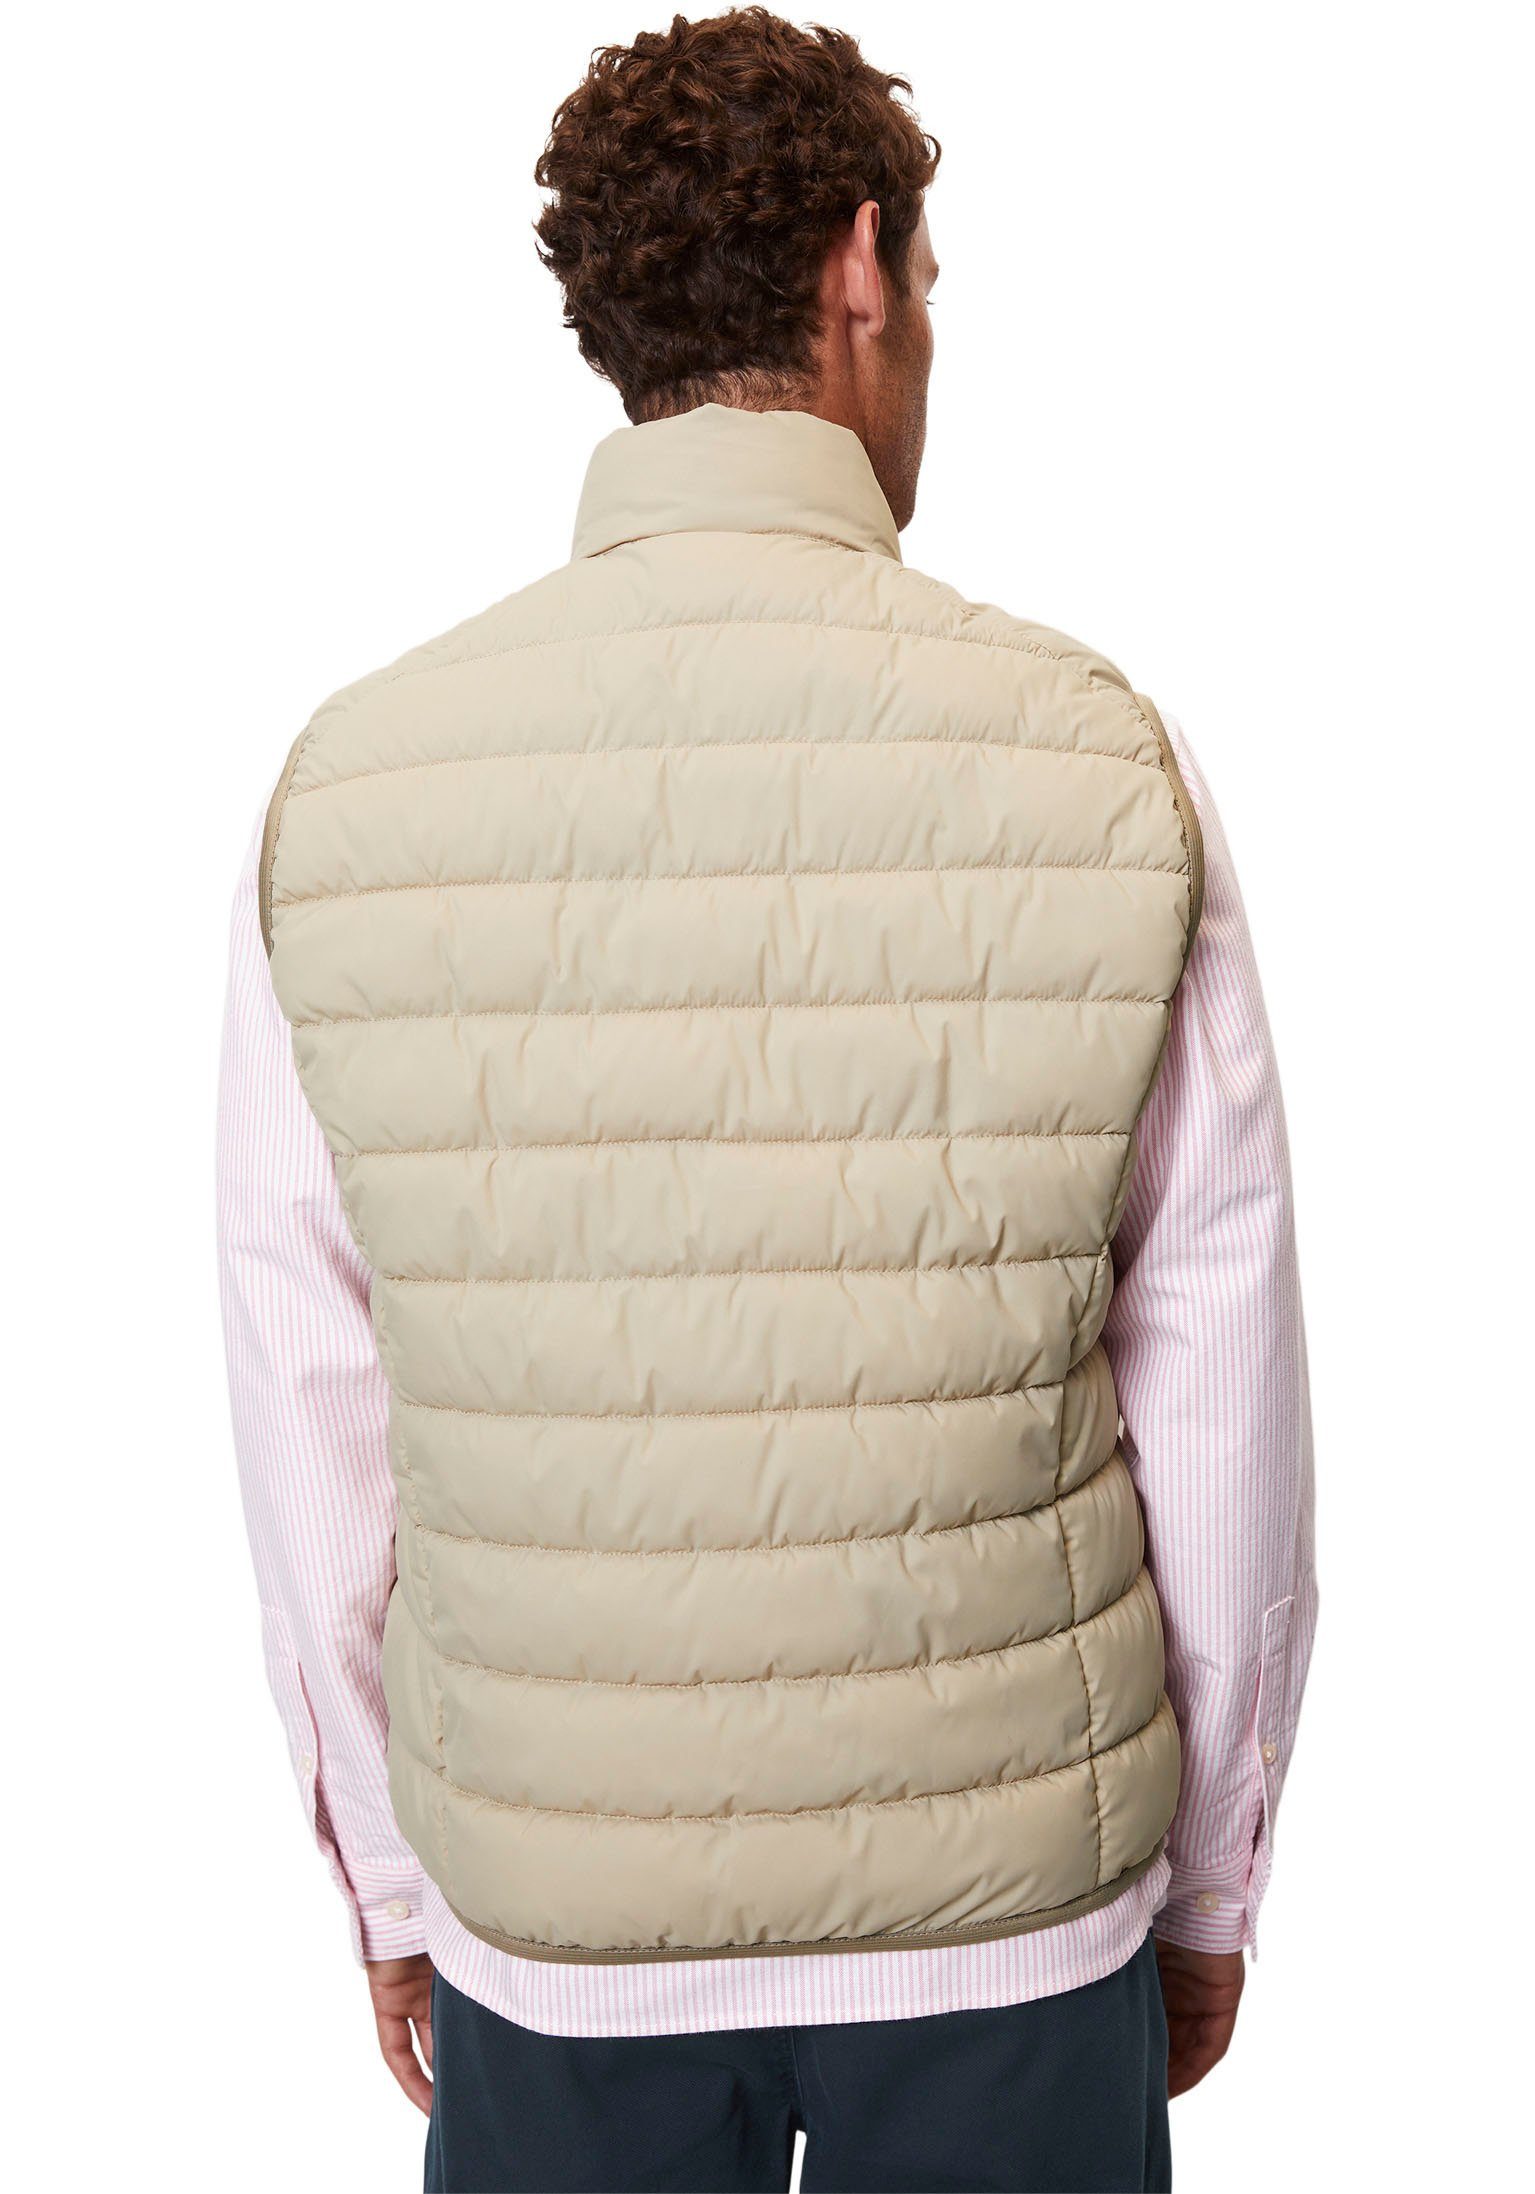 Marc O'Polo Steppweste Vest, Oberfläche cream jonesboro collar mit stand-up wasserabweisender sdnd